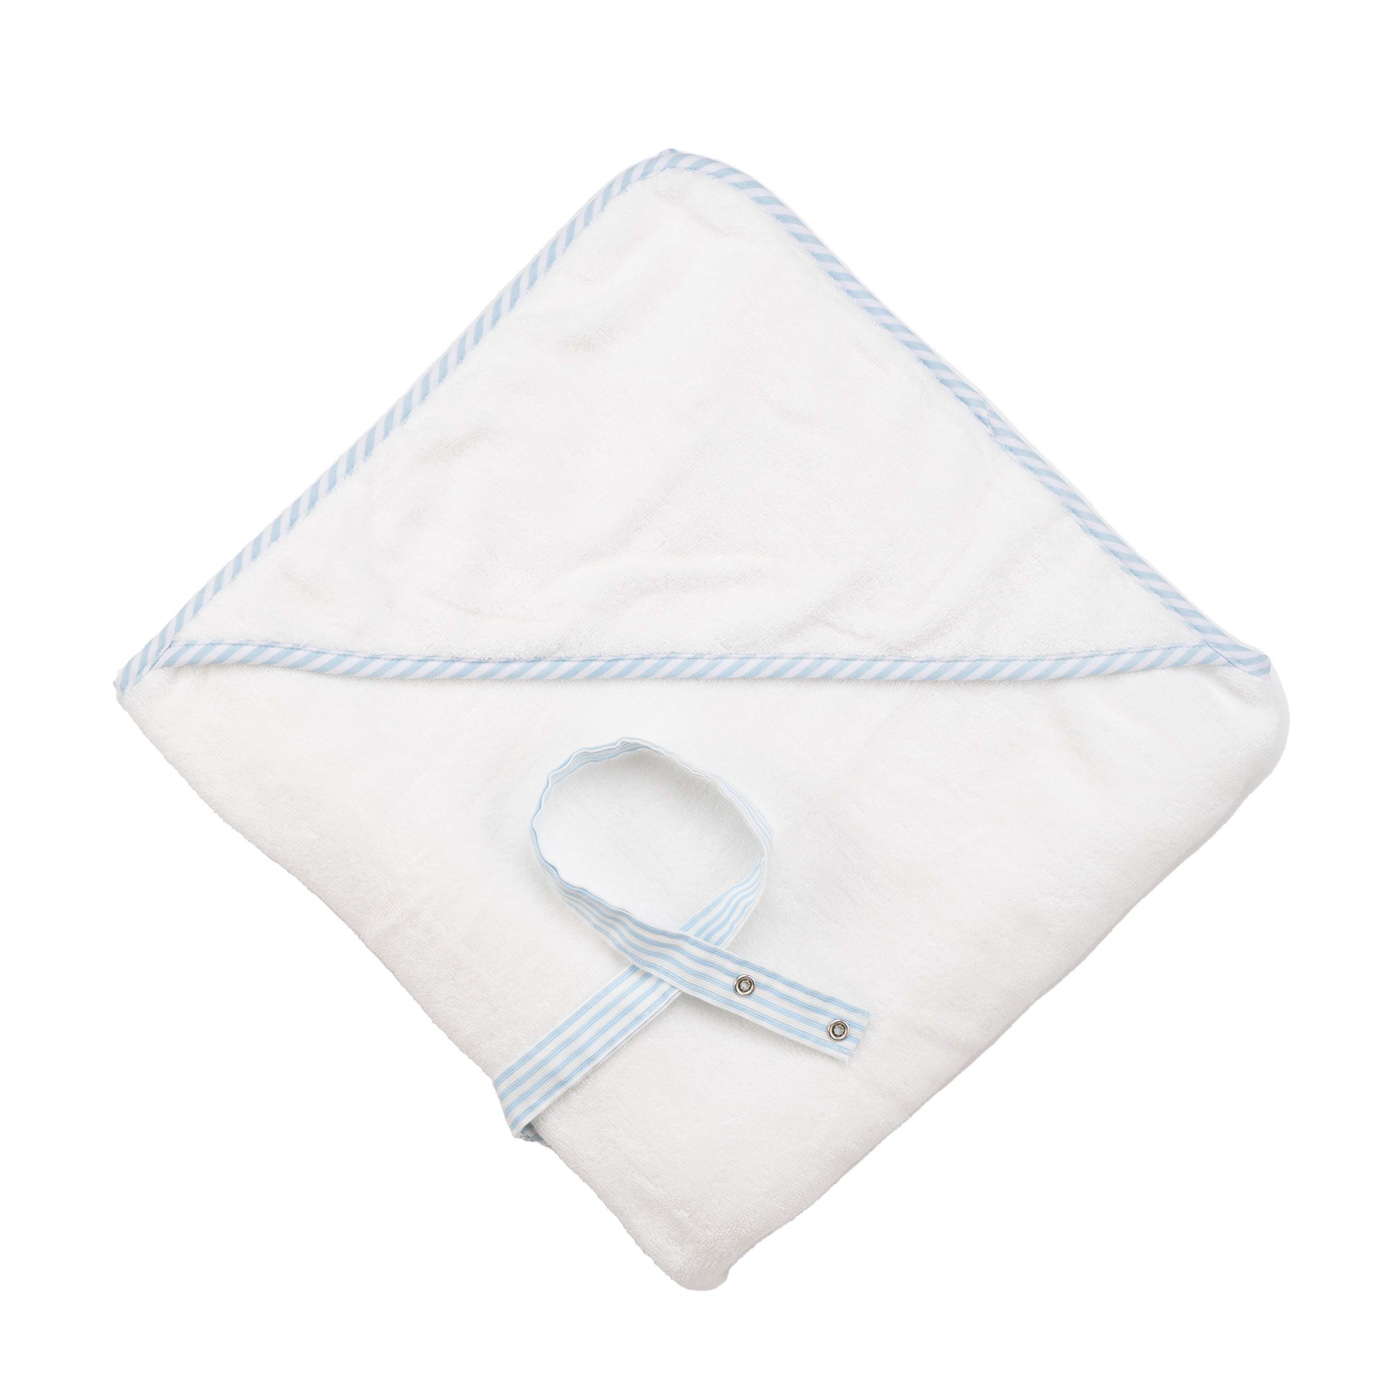 מגבת במבוק לתינוק עם קשירה - דגם לבן